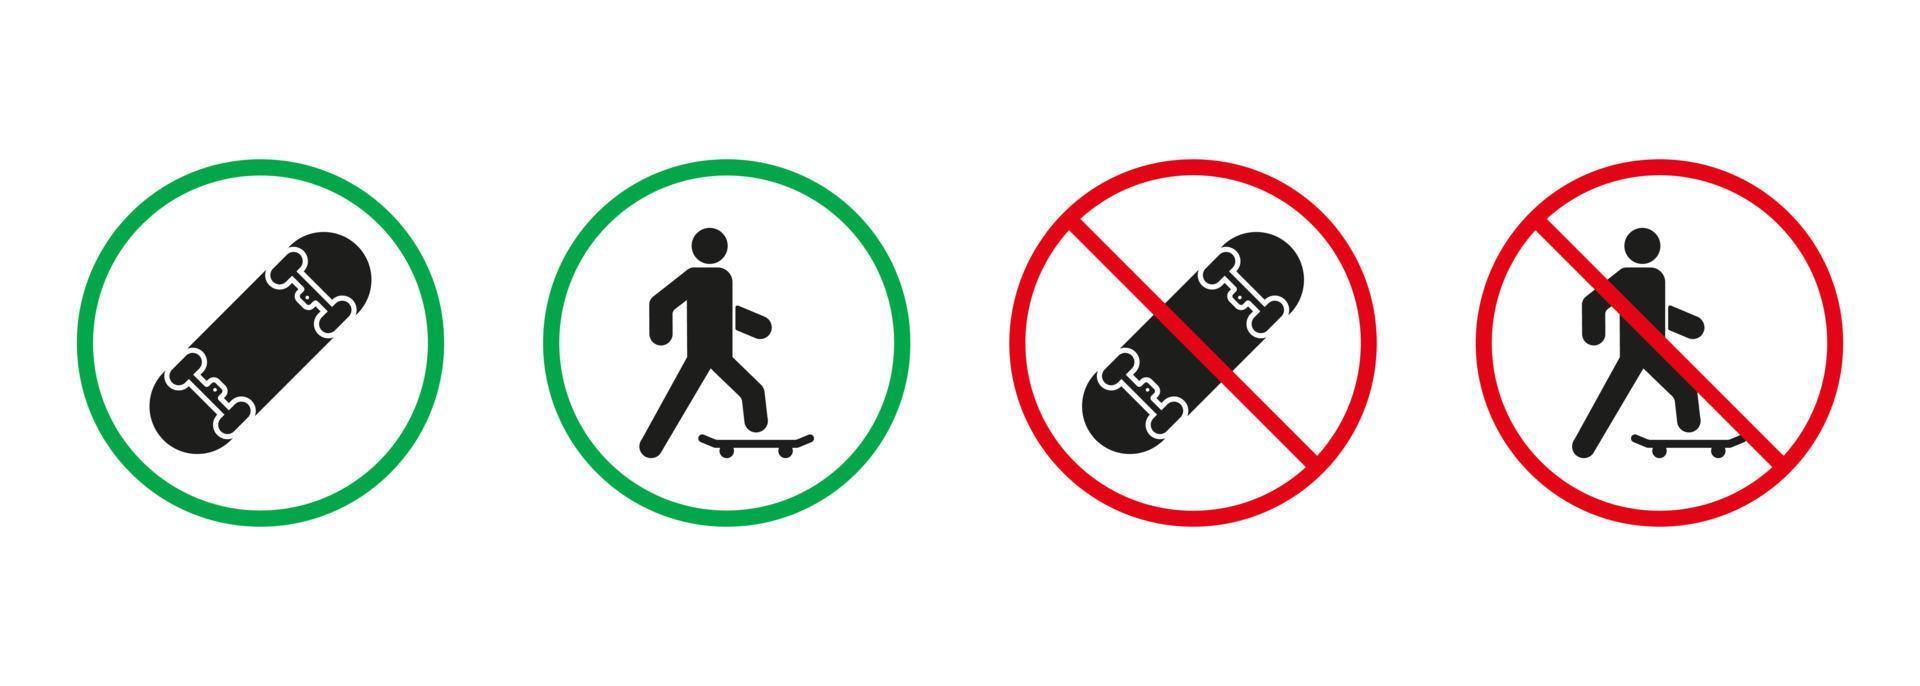 uomo su skateboard rosso e verde segni. persona su pattinare tavola silhouette icone impostare. permesso e Proibito iscrizione con eco trasporto pittogramma. isolato vettore illustrazione.